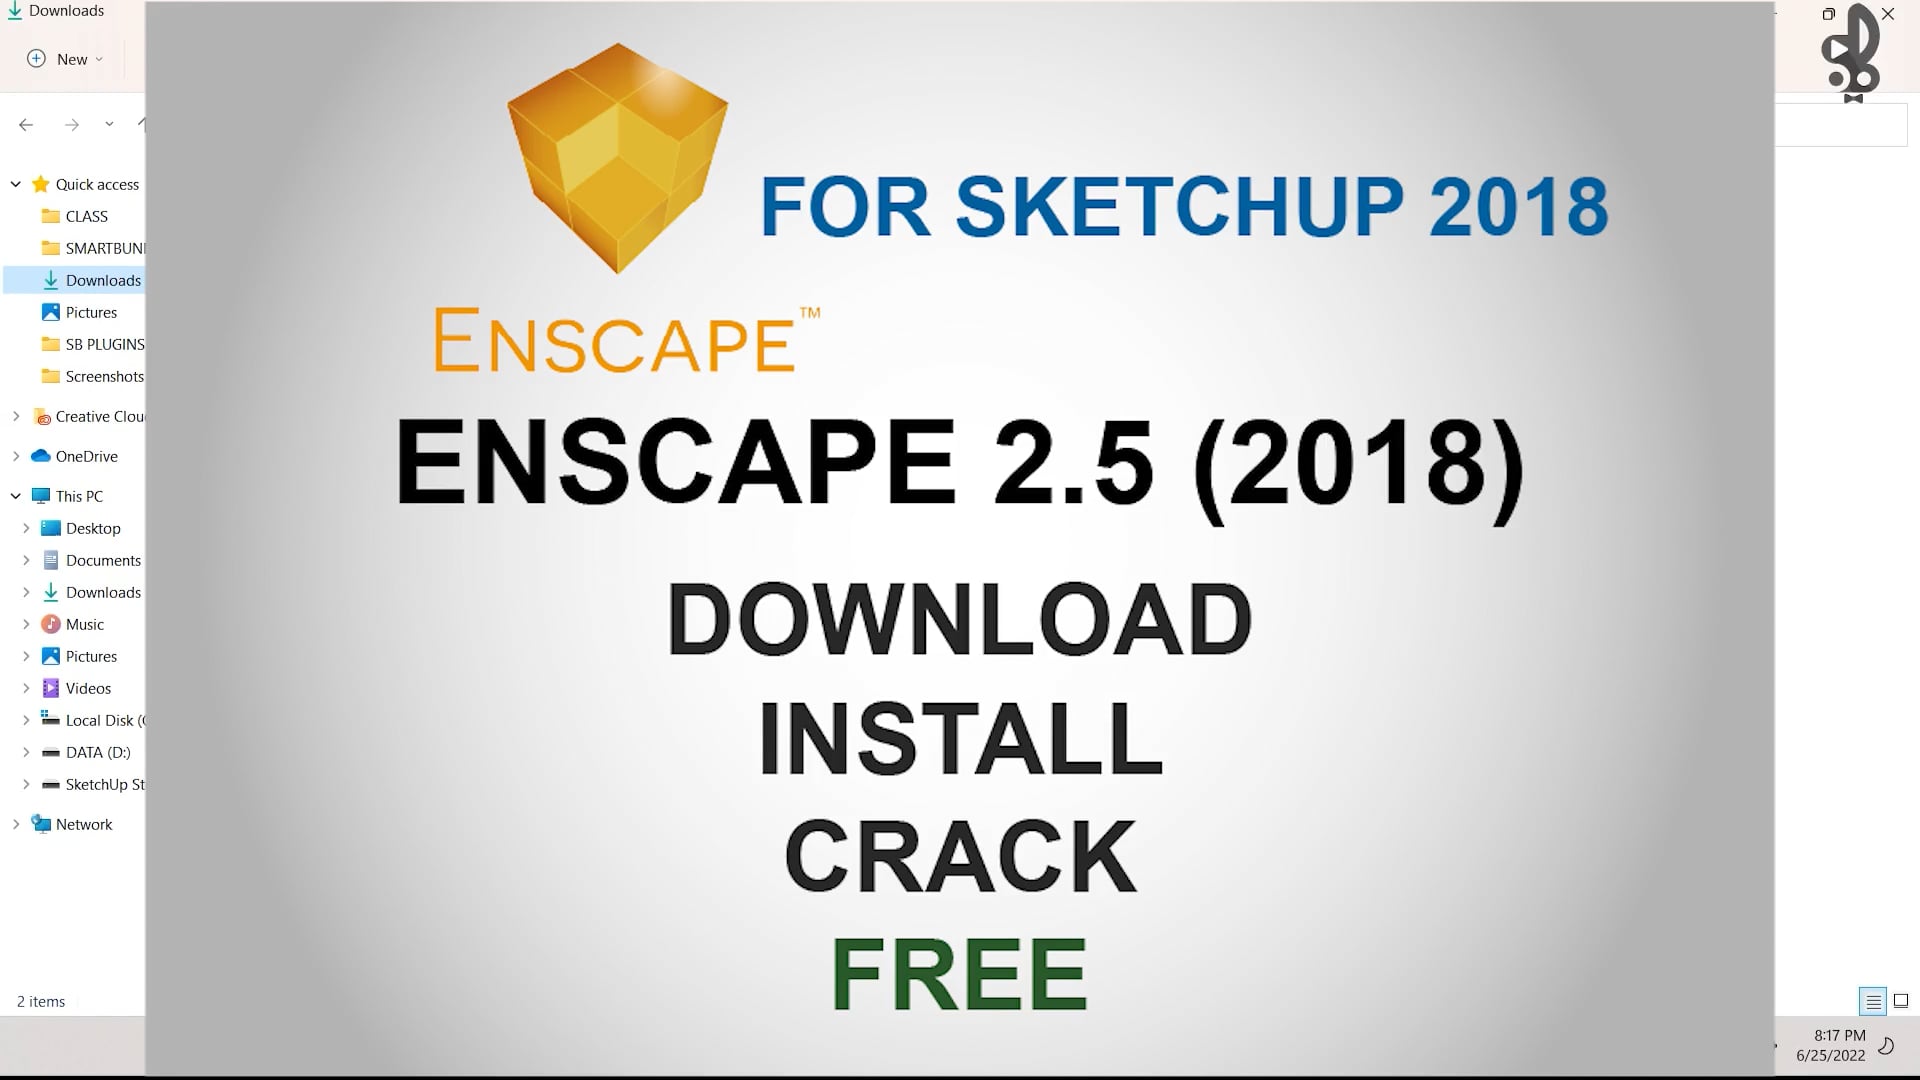 enscape 2.5 crack download